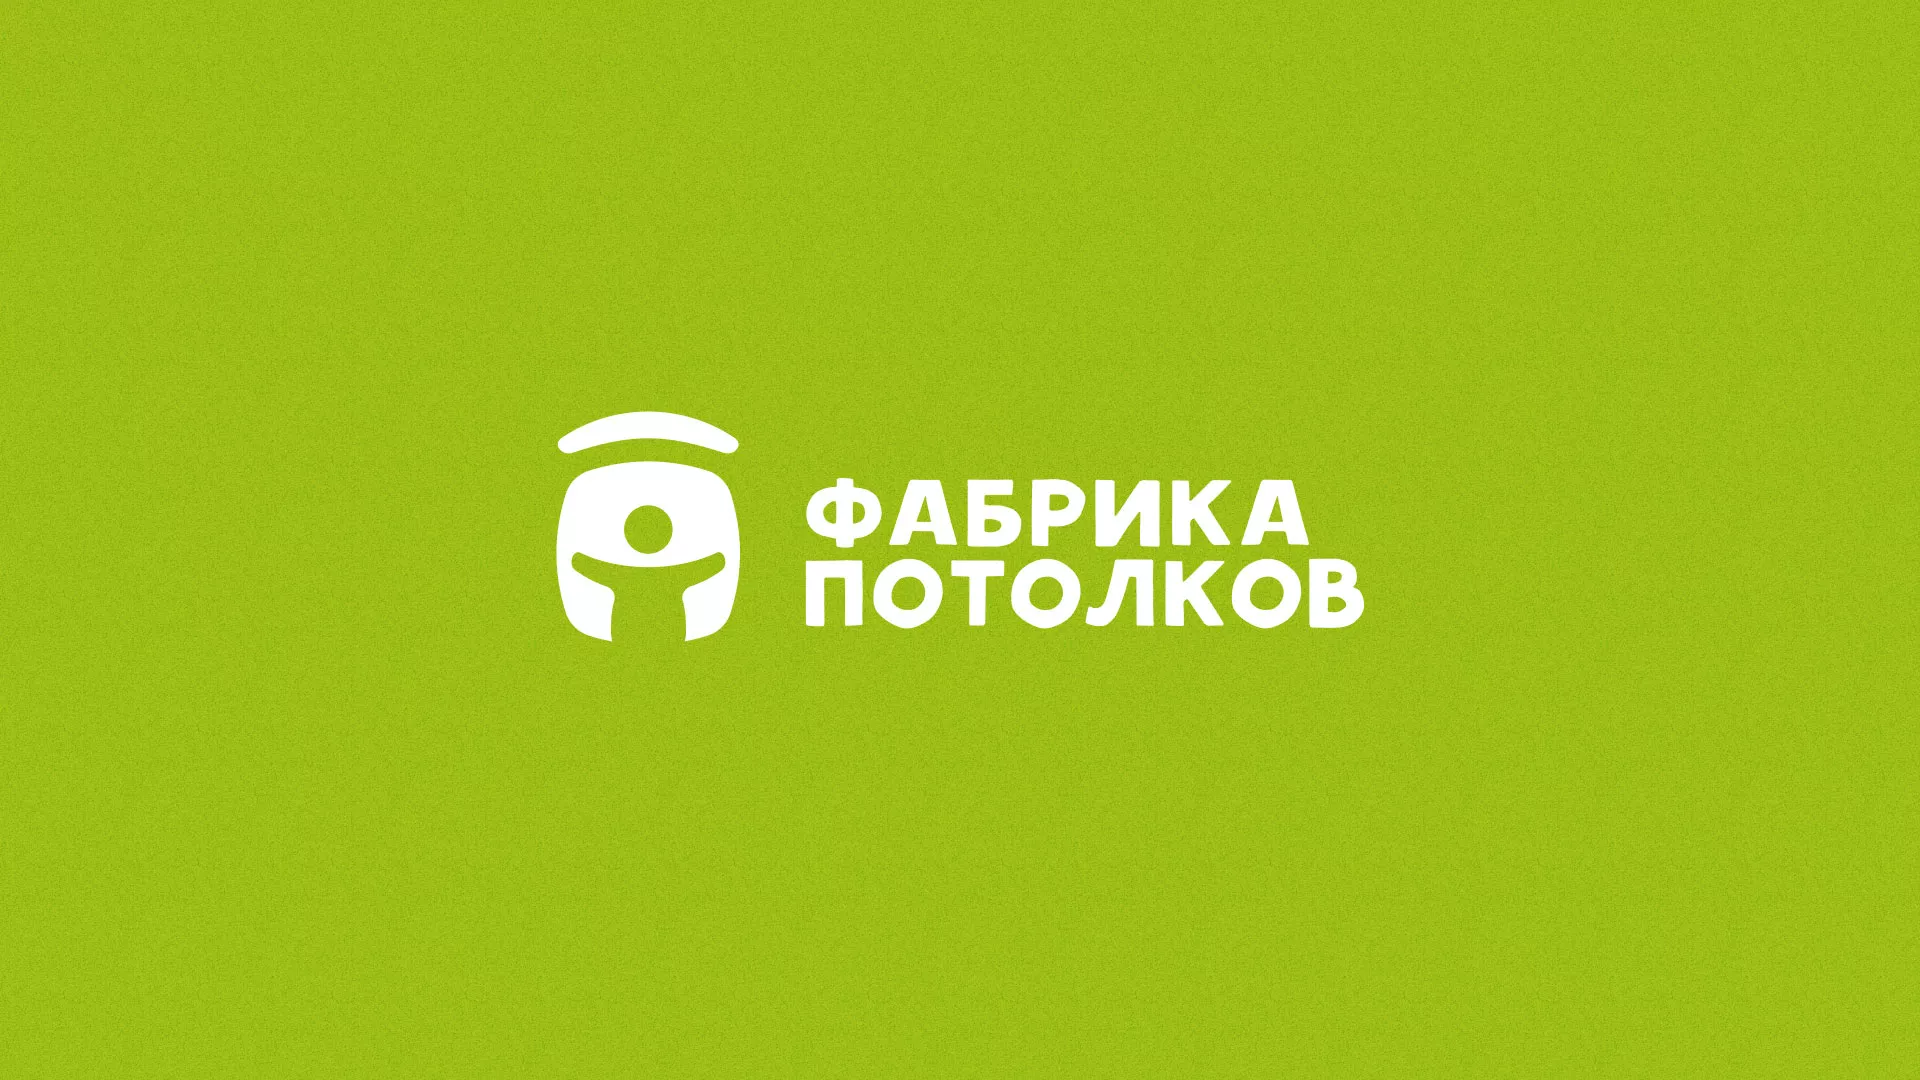 Разработка логотипа для производства натяжных потолков в Азнакаево